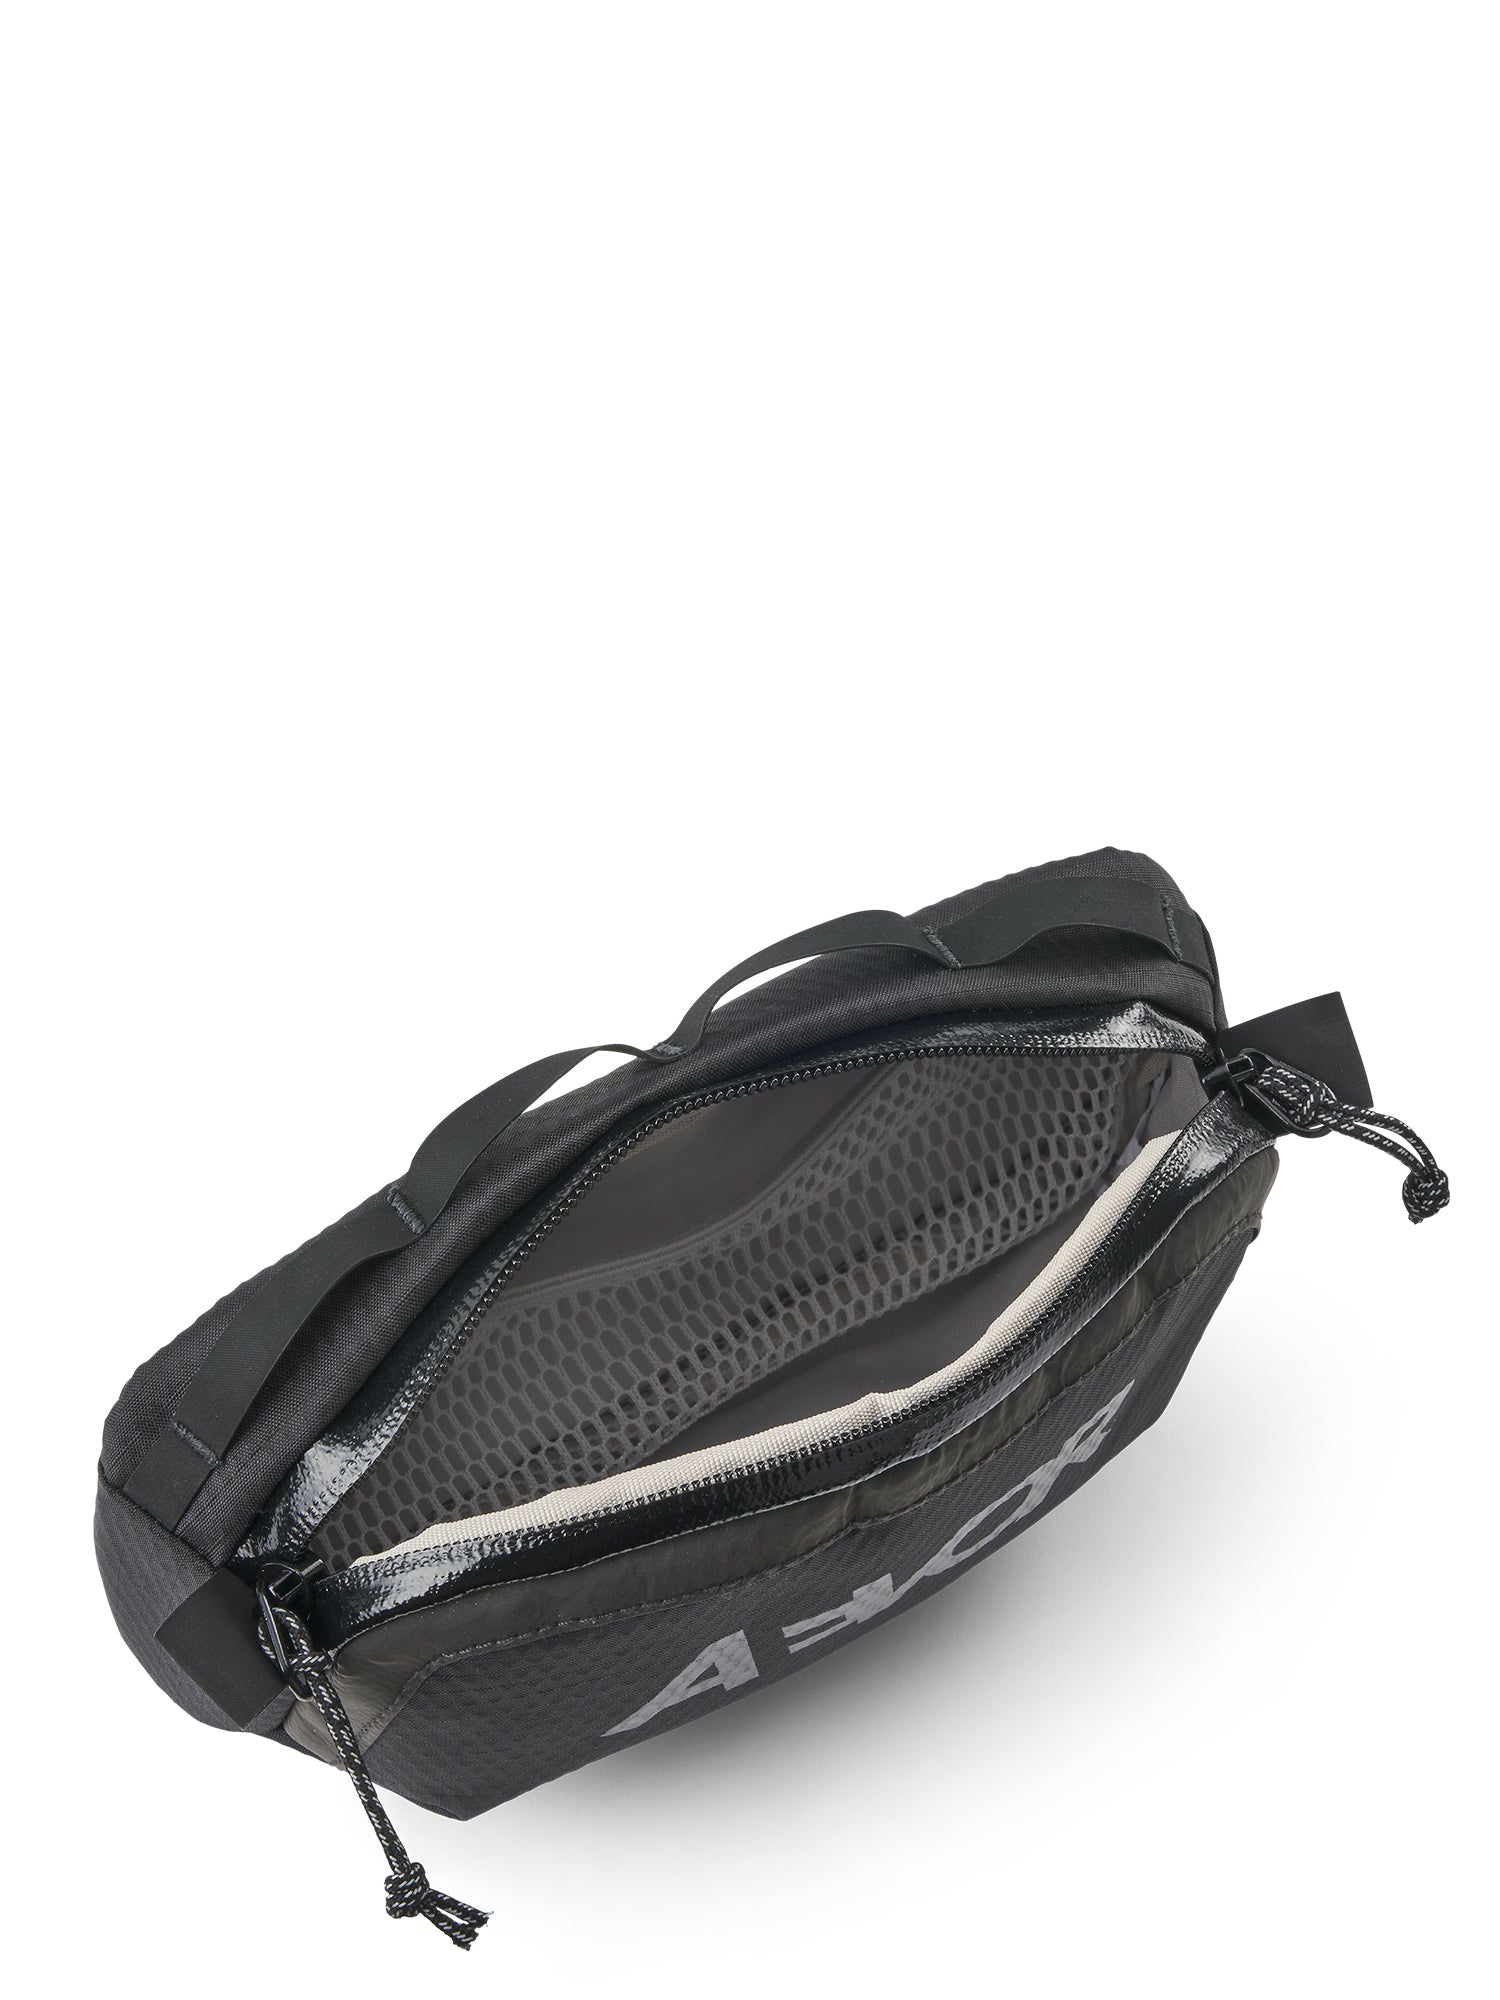 AEVOR Bar Bag Mini Lenkertasche - Proof Black